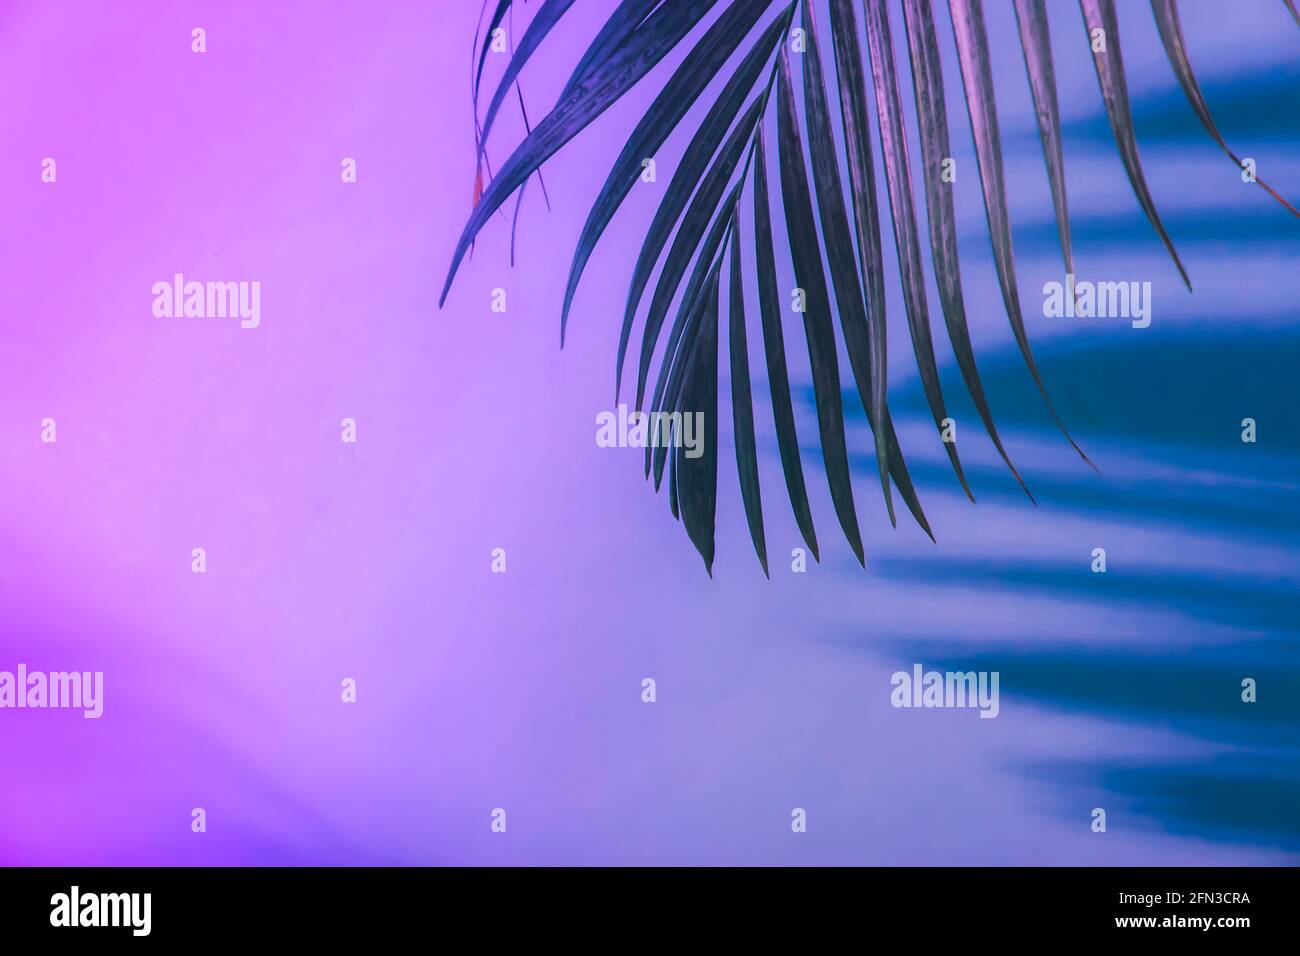 Schatten von tropischen Palmenblättern in Neonlicht. Fluoreszierendes, ultraviolettes Farblayout. Stockfoto